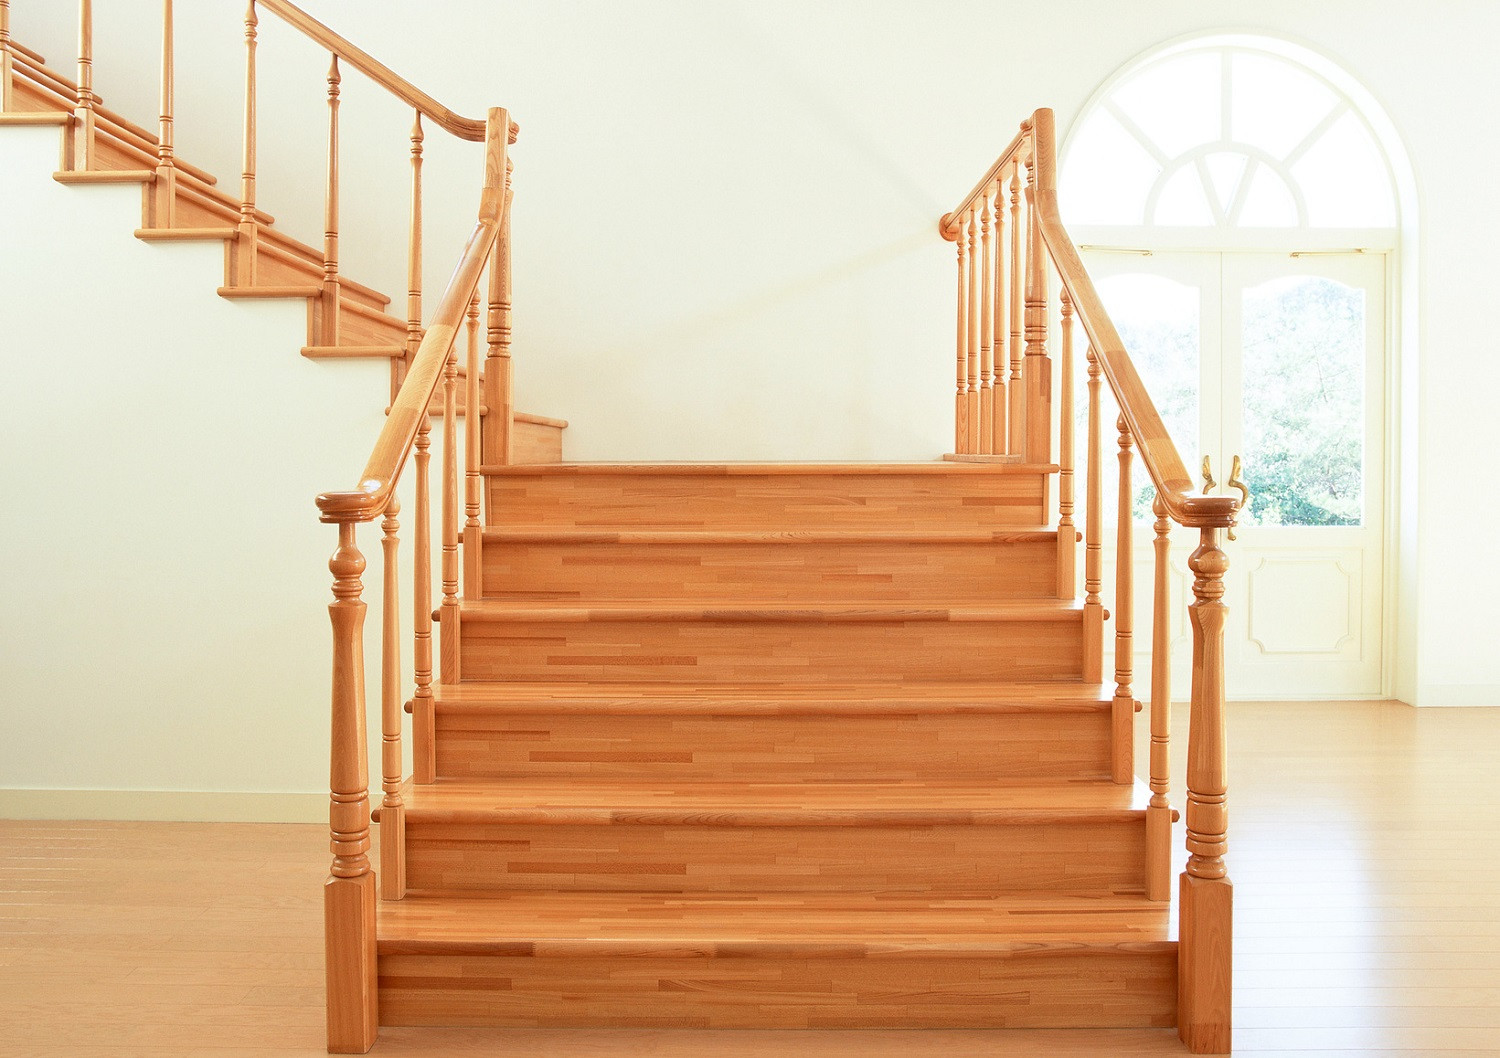 Customiser ses escaliers : 12 idées pour un relooking réussi  Peinture  escalier bois, Renovation escalier bois, Repeindre escalier